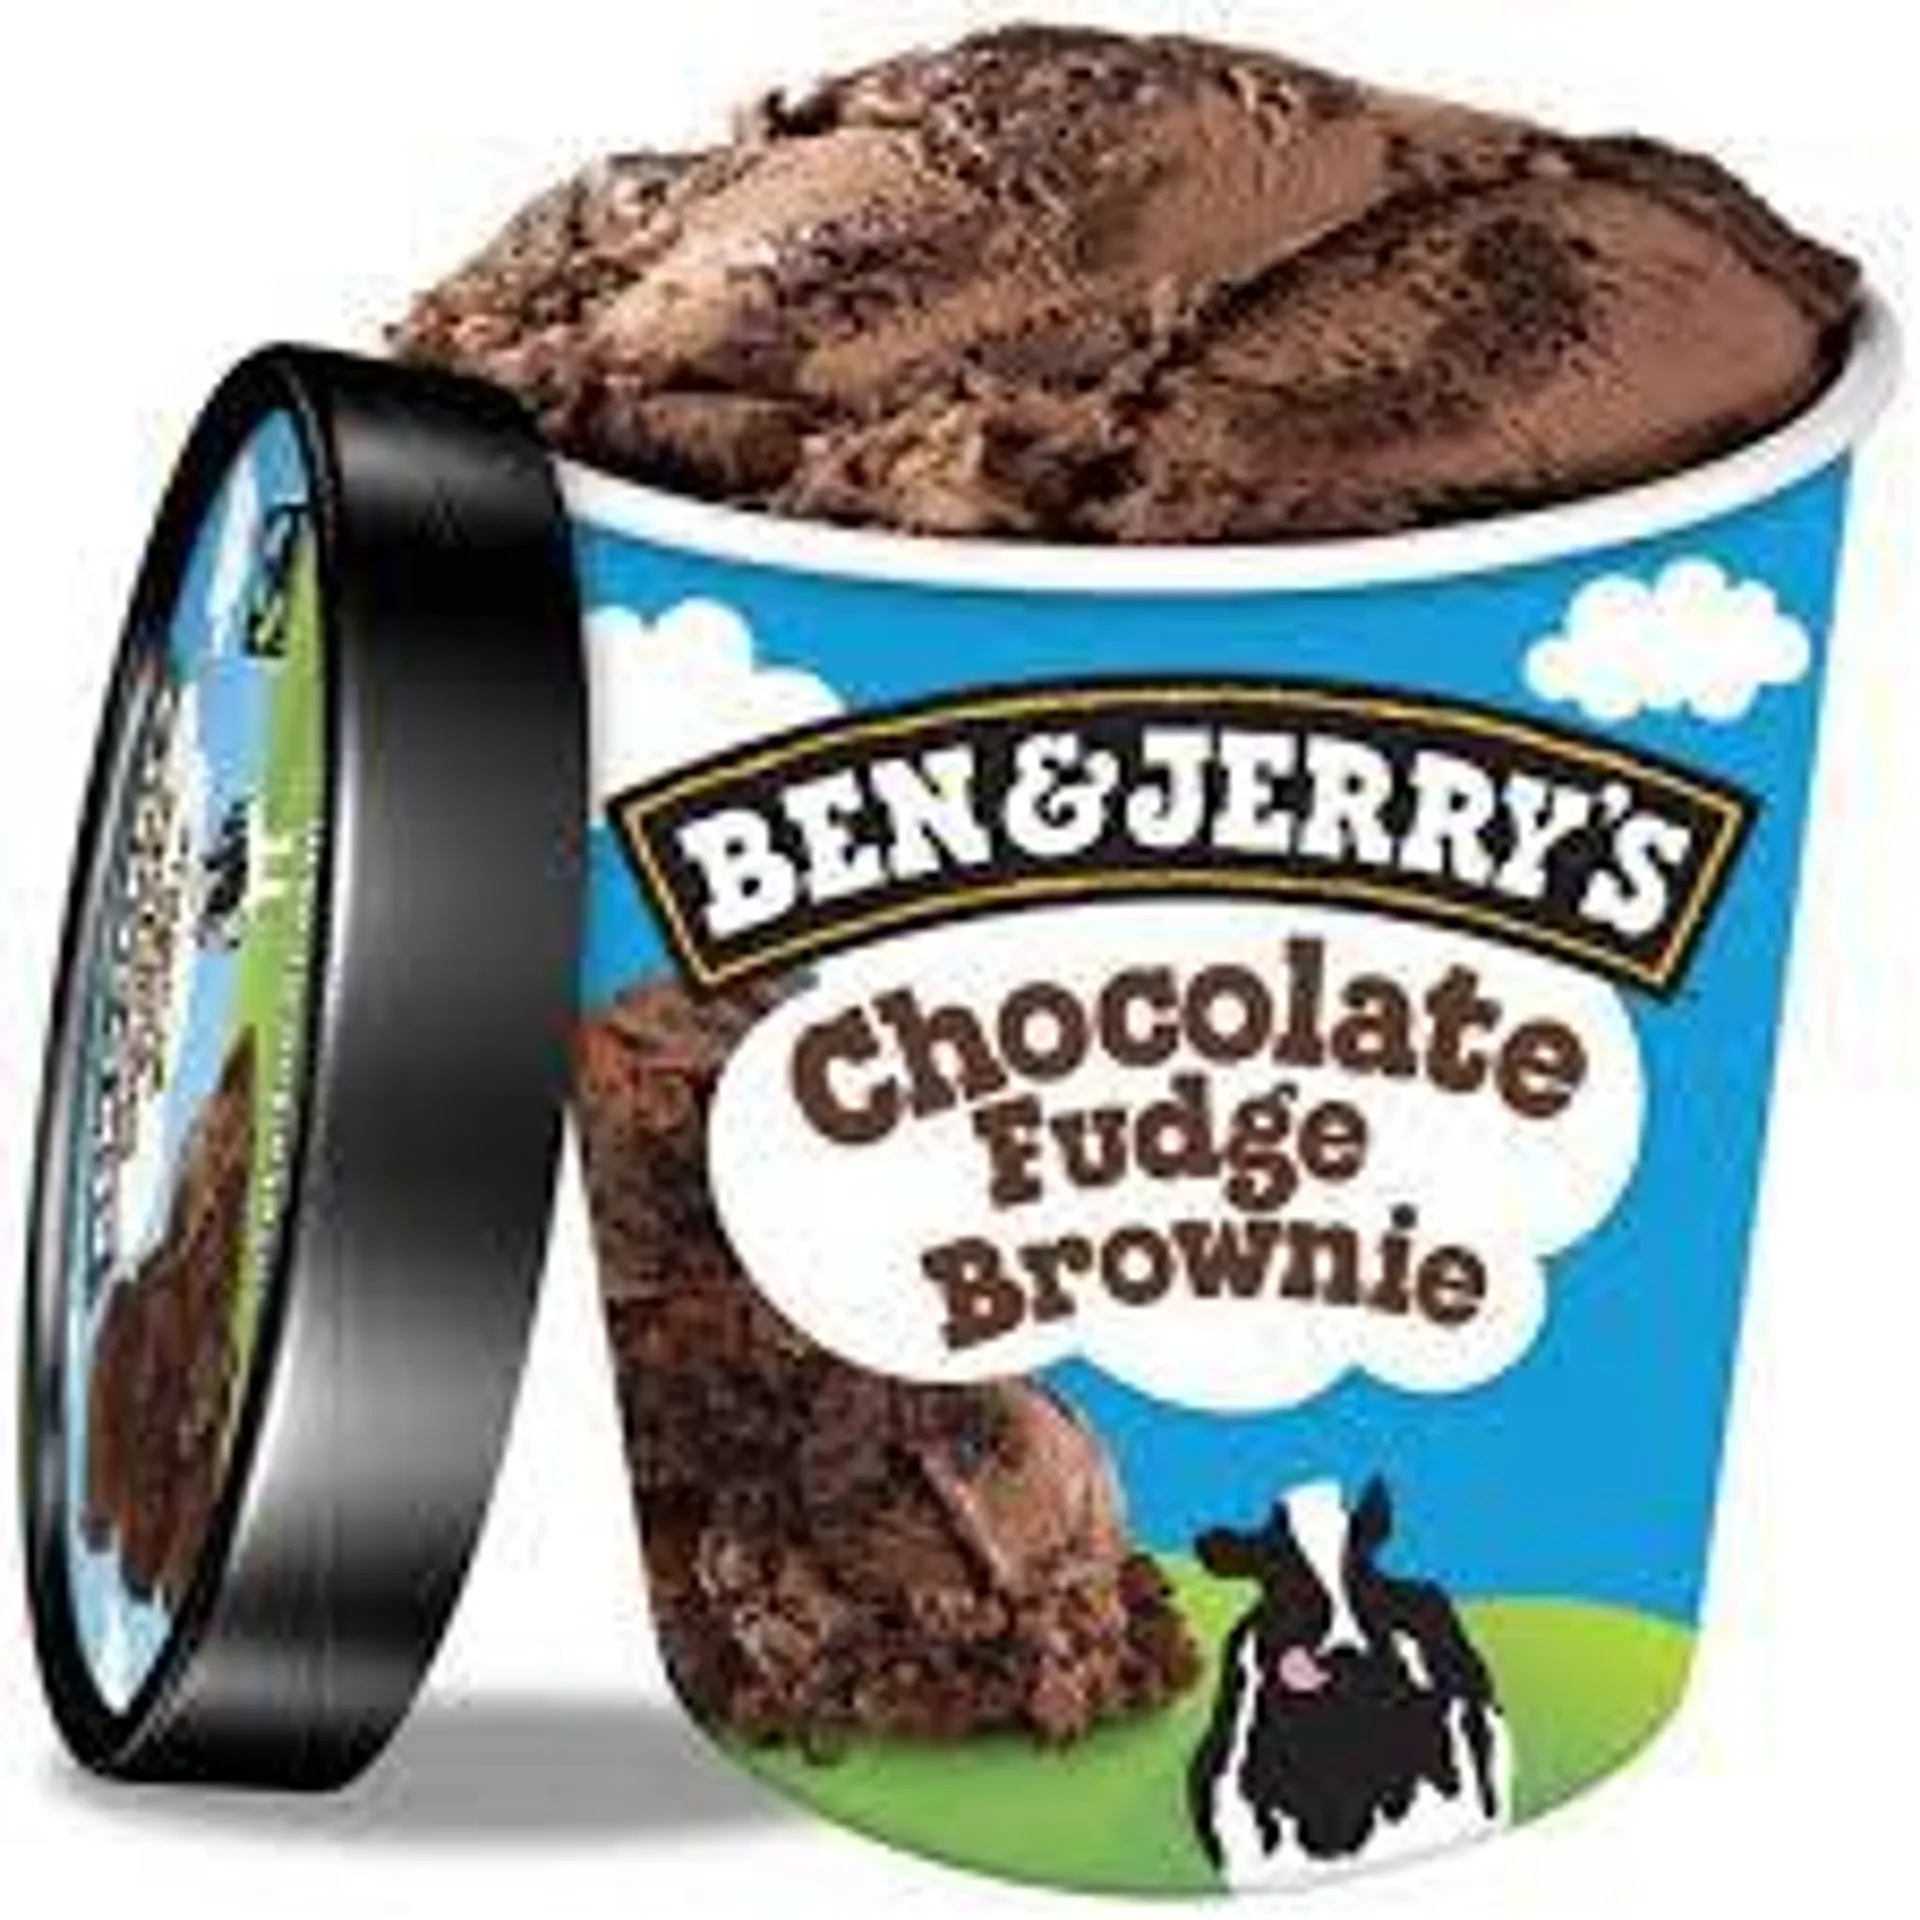 Ben & Jerry's - Chocolate Fudge Brownie1 PT